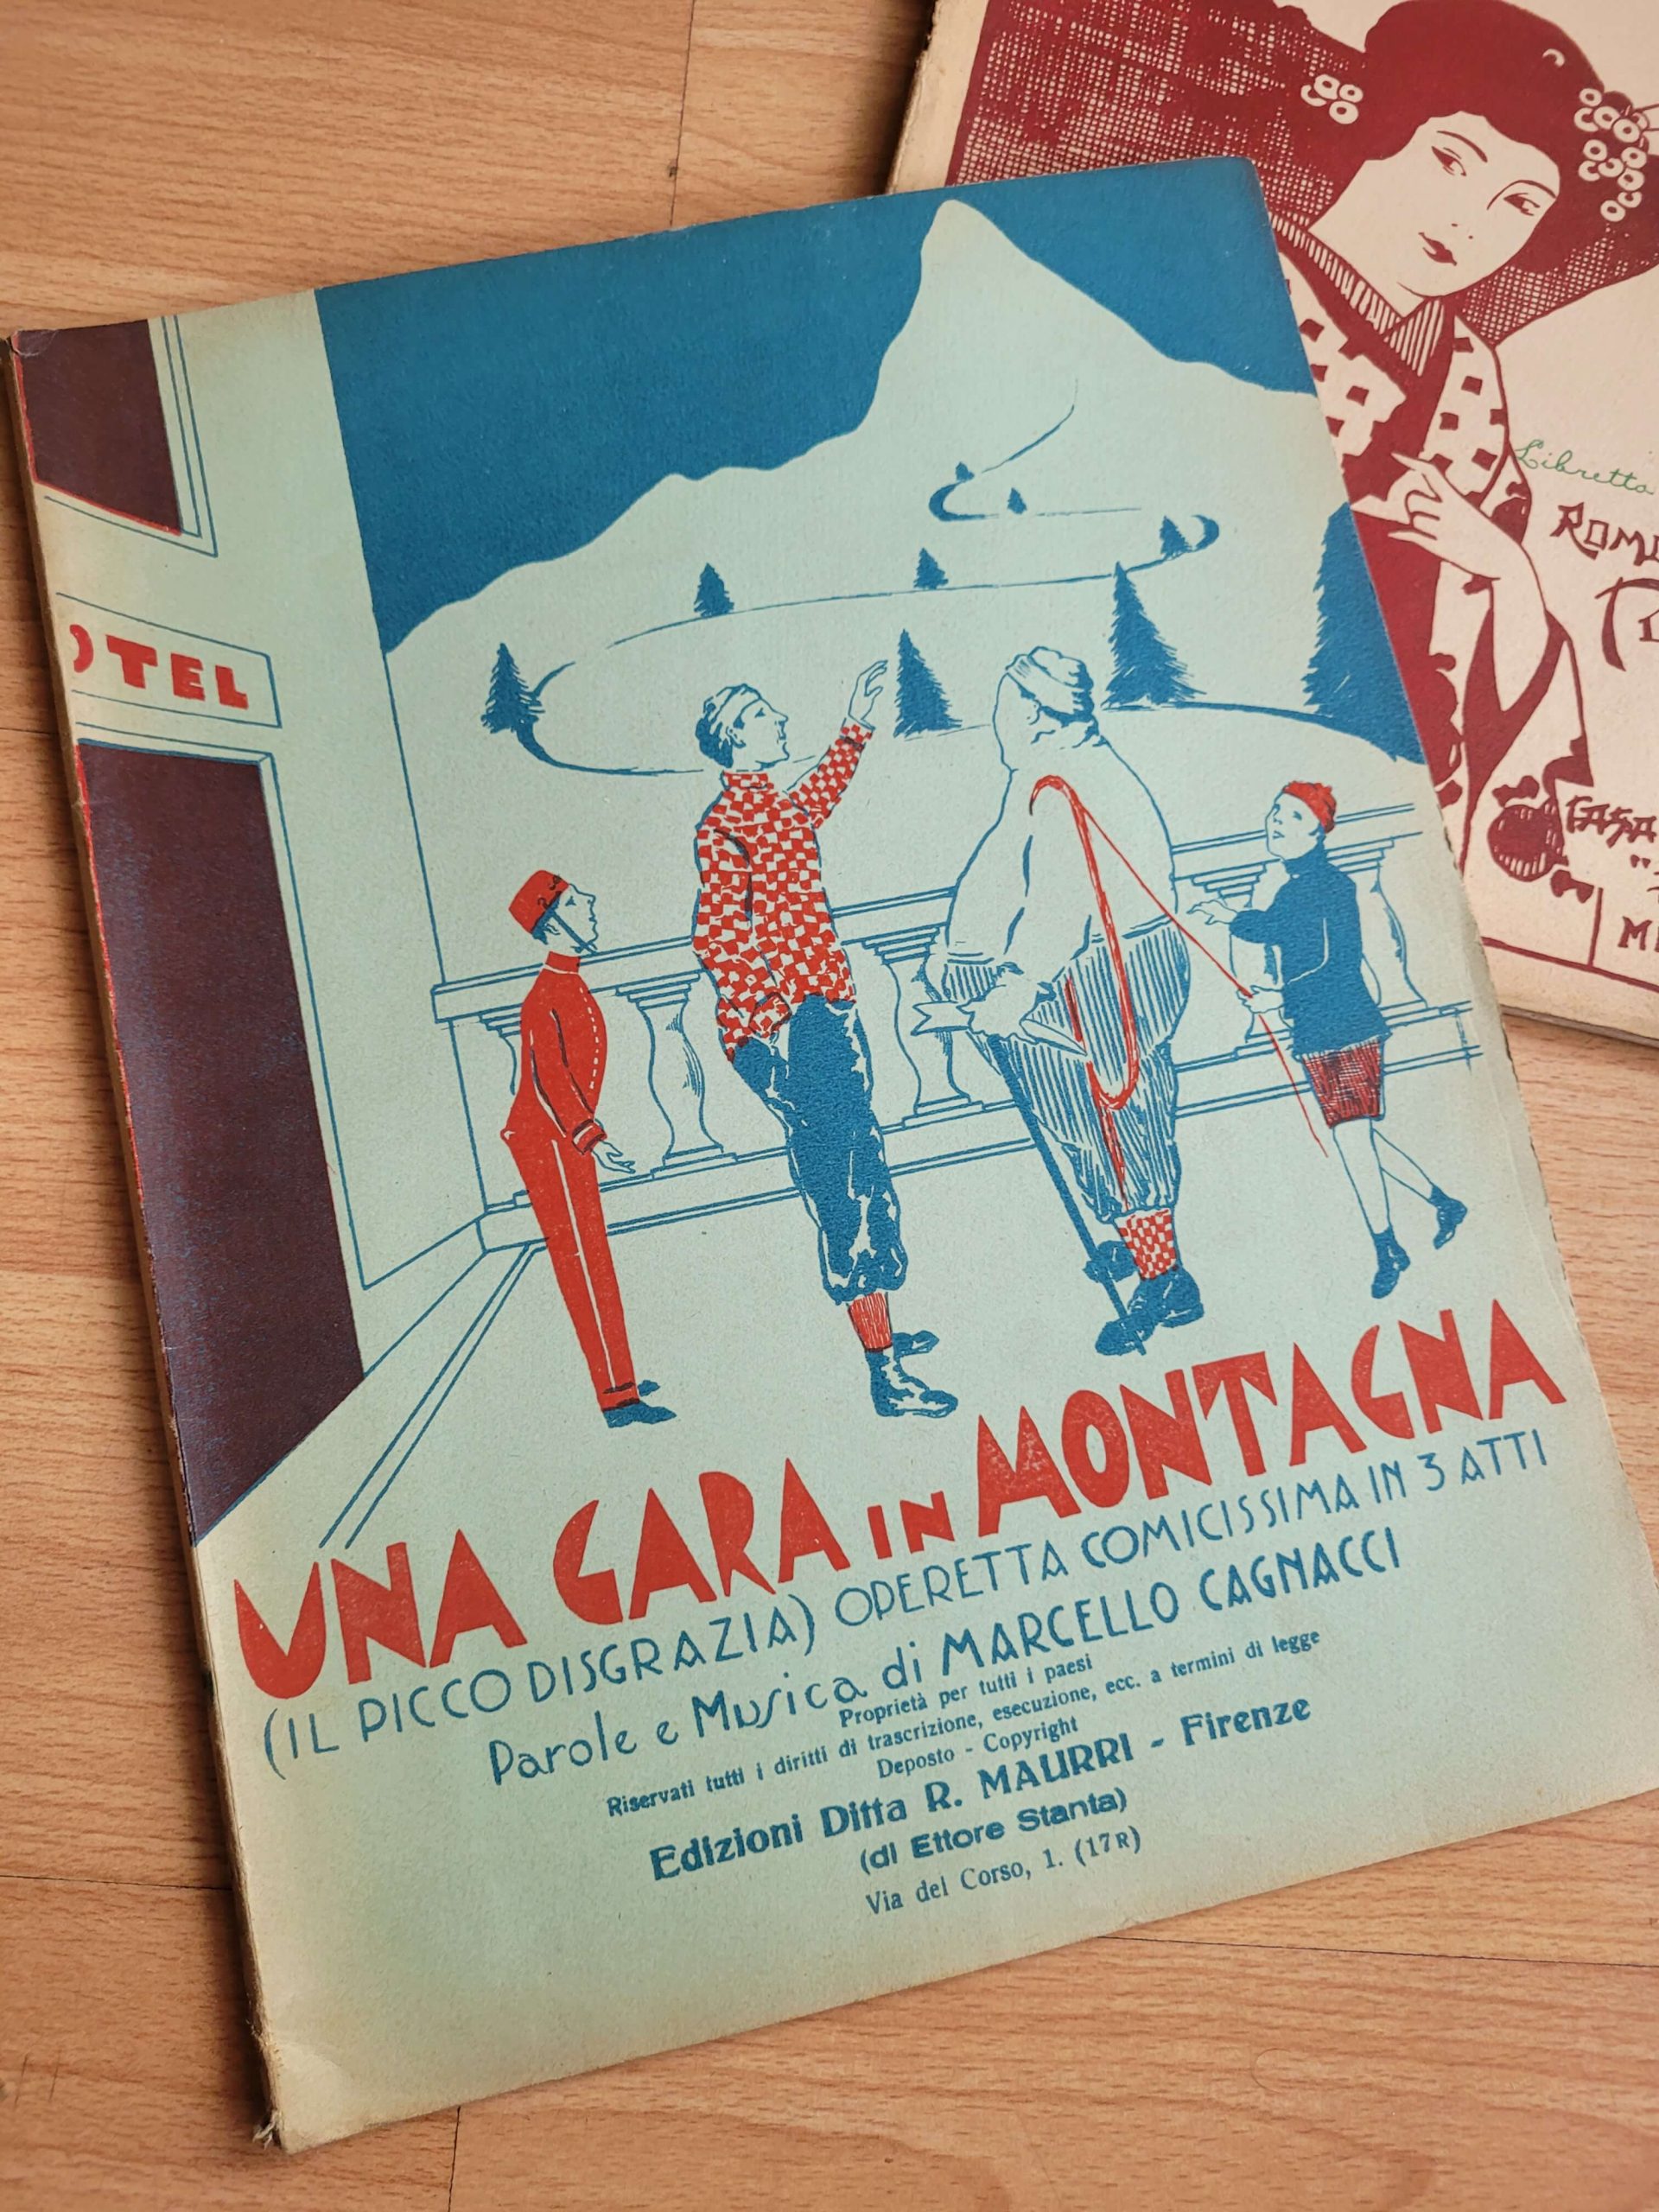 Libros de partituras de operetas italianas, años 40s (x2)